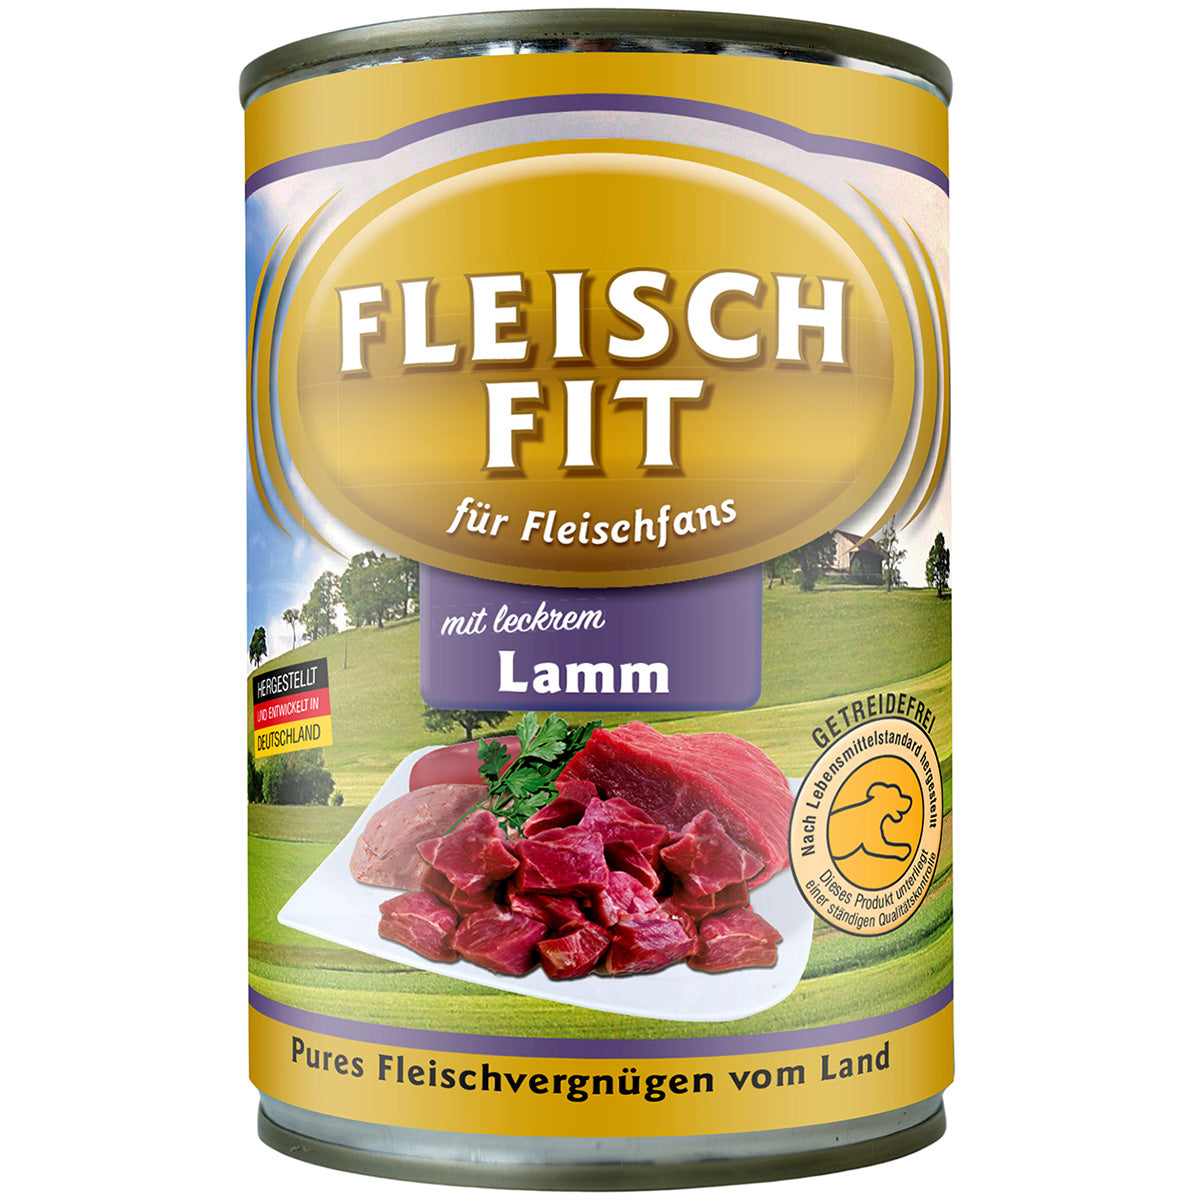 FleischFit mit Lamm, 400g